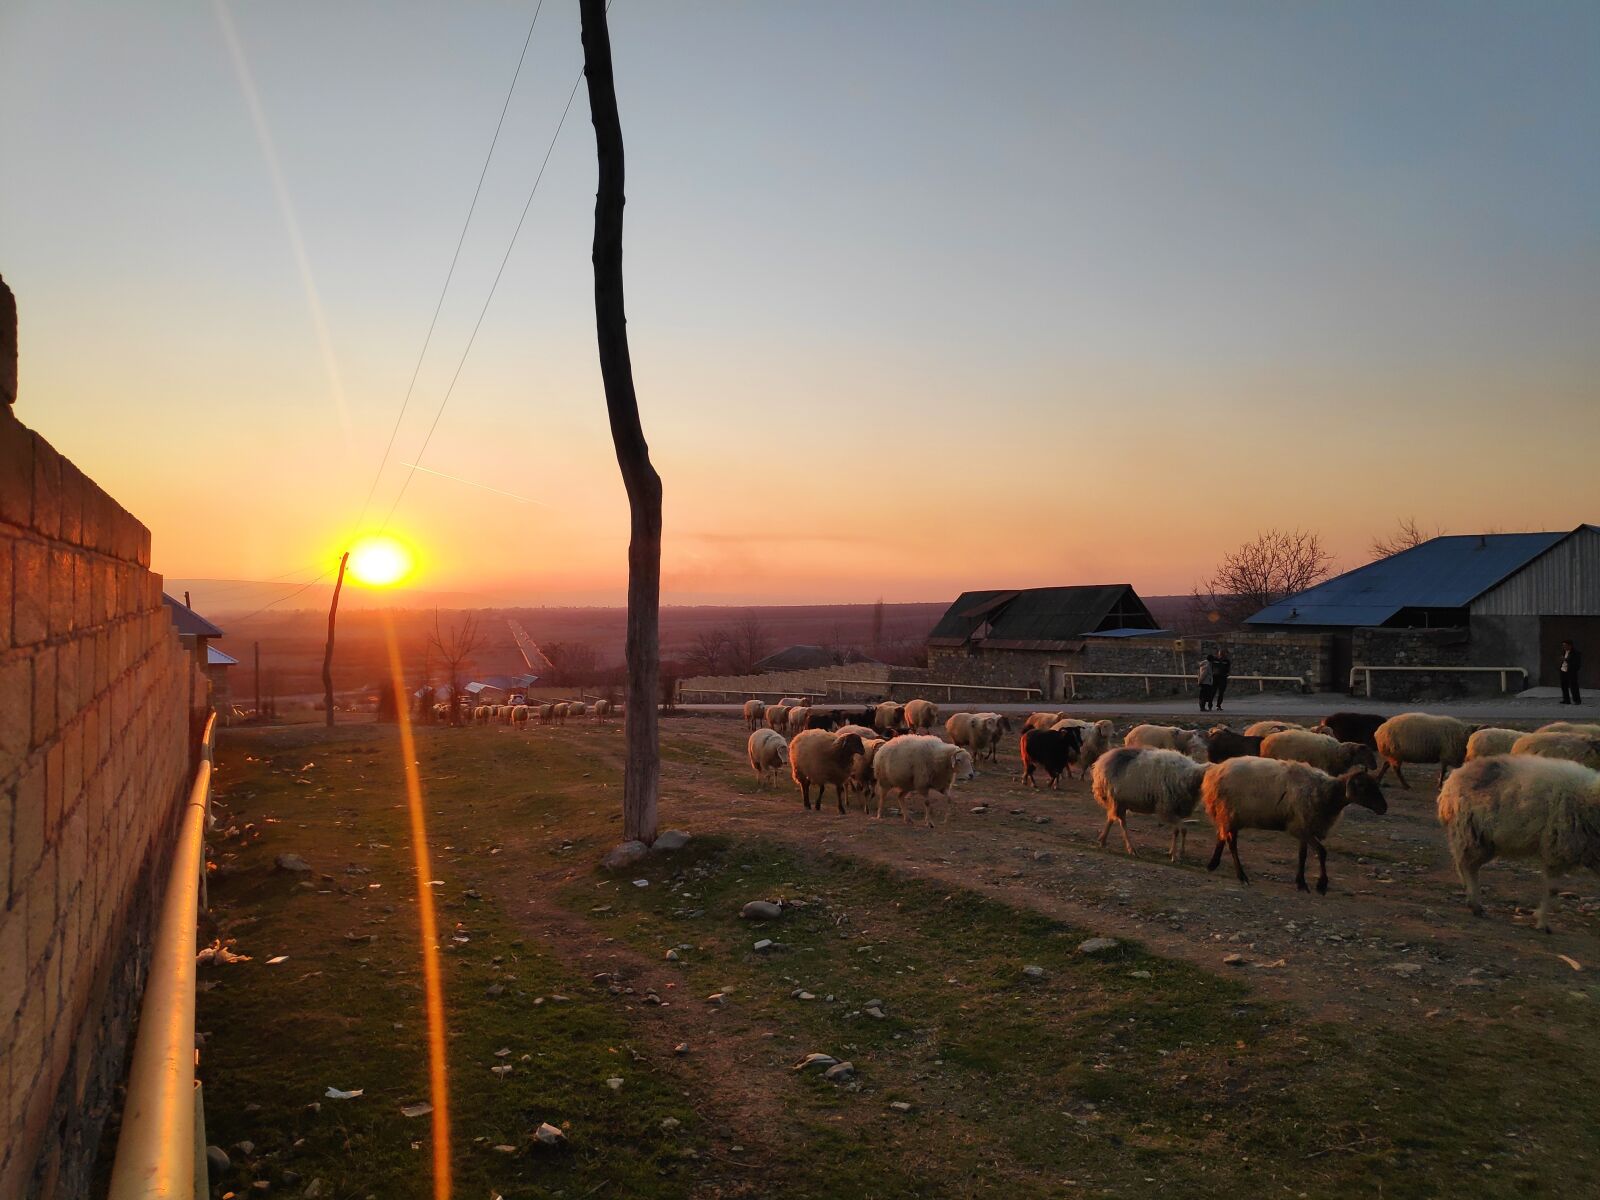 Xiaomi POCO F1 sample photo. Sunset, sun, sheep's photography